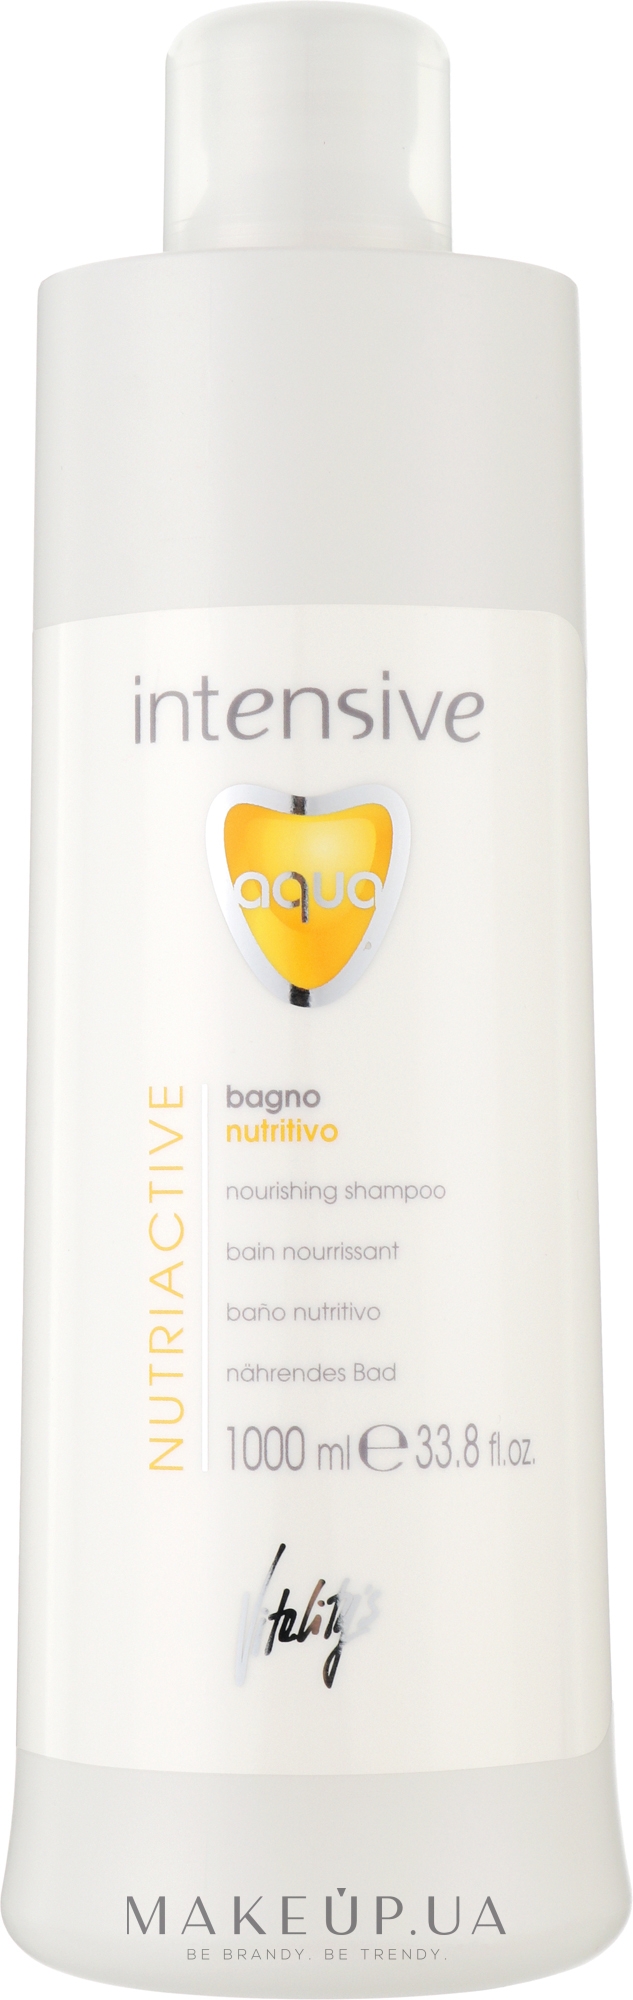 Питательный шампунь для сухих волос - Vitality's Intensive Aqua Nourishing Shampoo — фото 1000ml